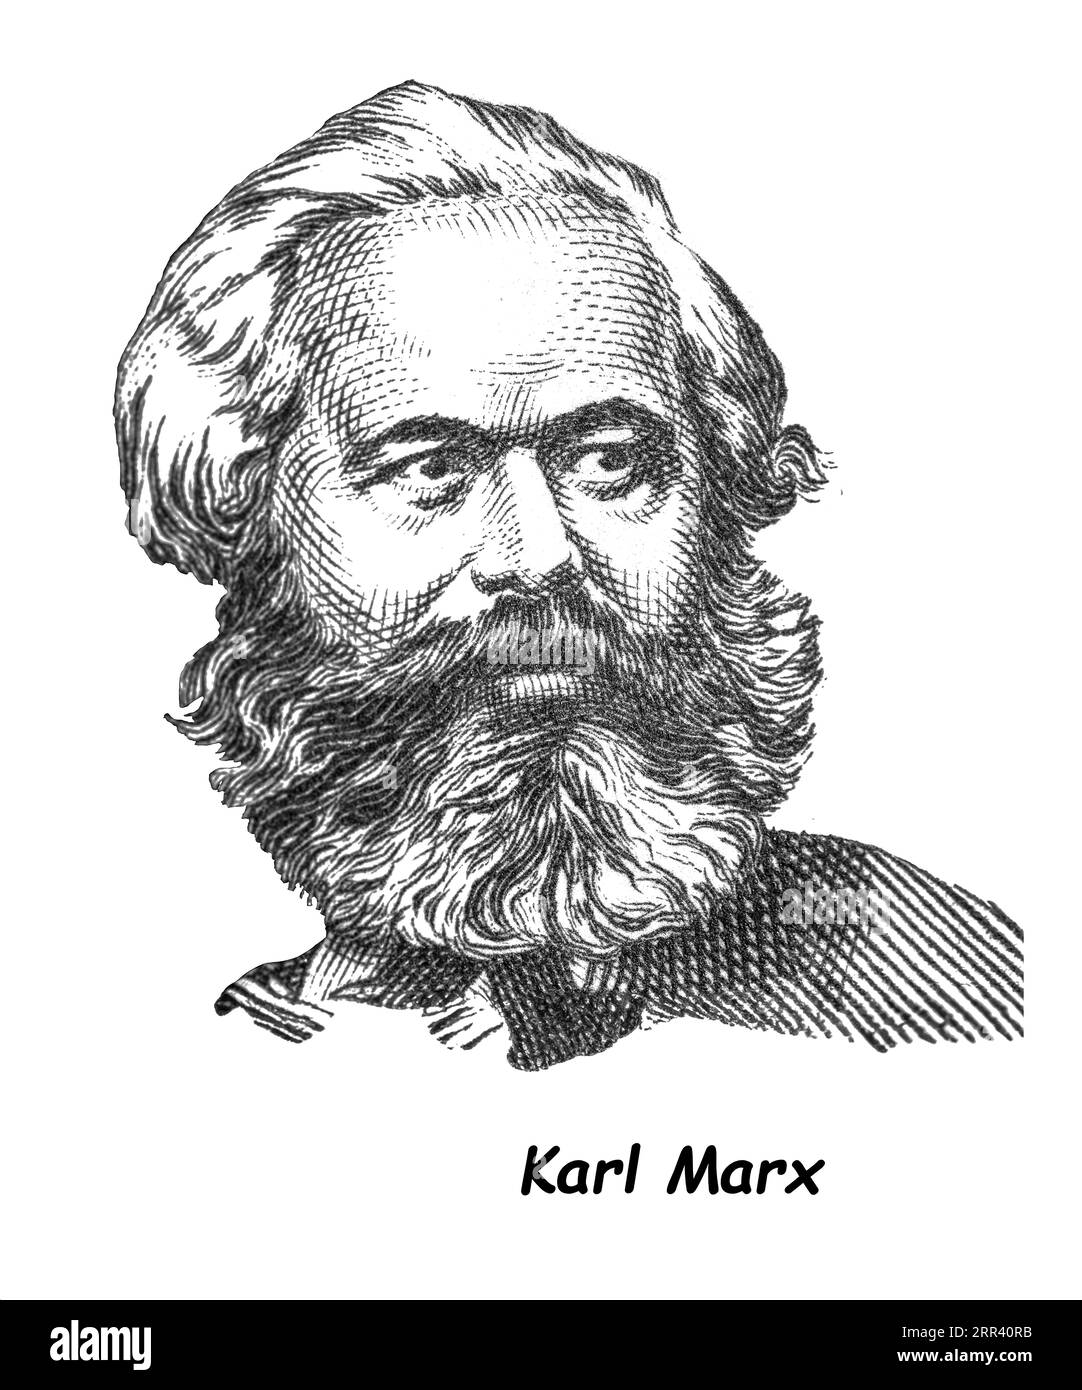 LUGA, RUSSIE - 12 SEPTEMBRE 2018 : un timbre imprimé par LA RUSSIE (URSS) montre Karl Marx - philosophe allemand, économiste, théoricien politique, sociologue, Banque D'Images